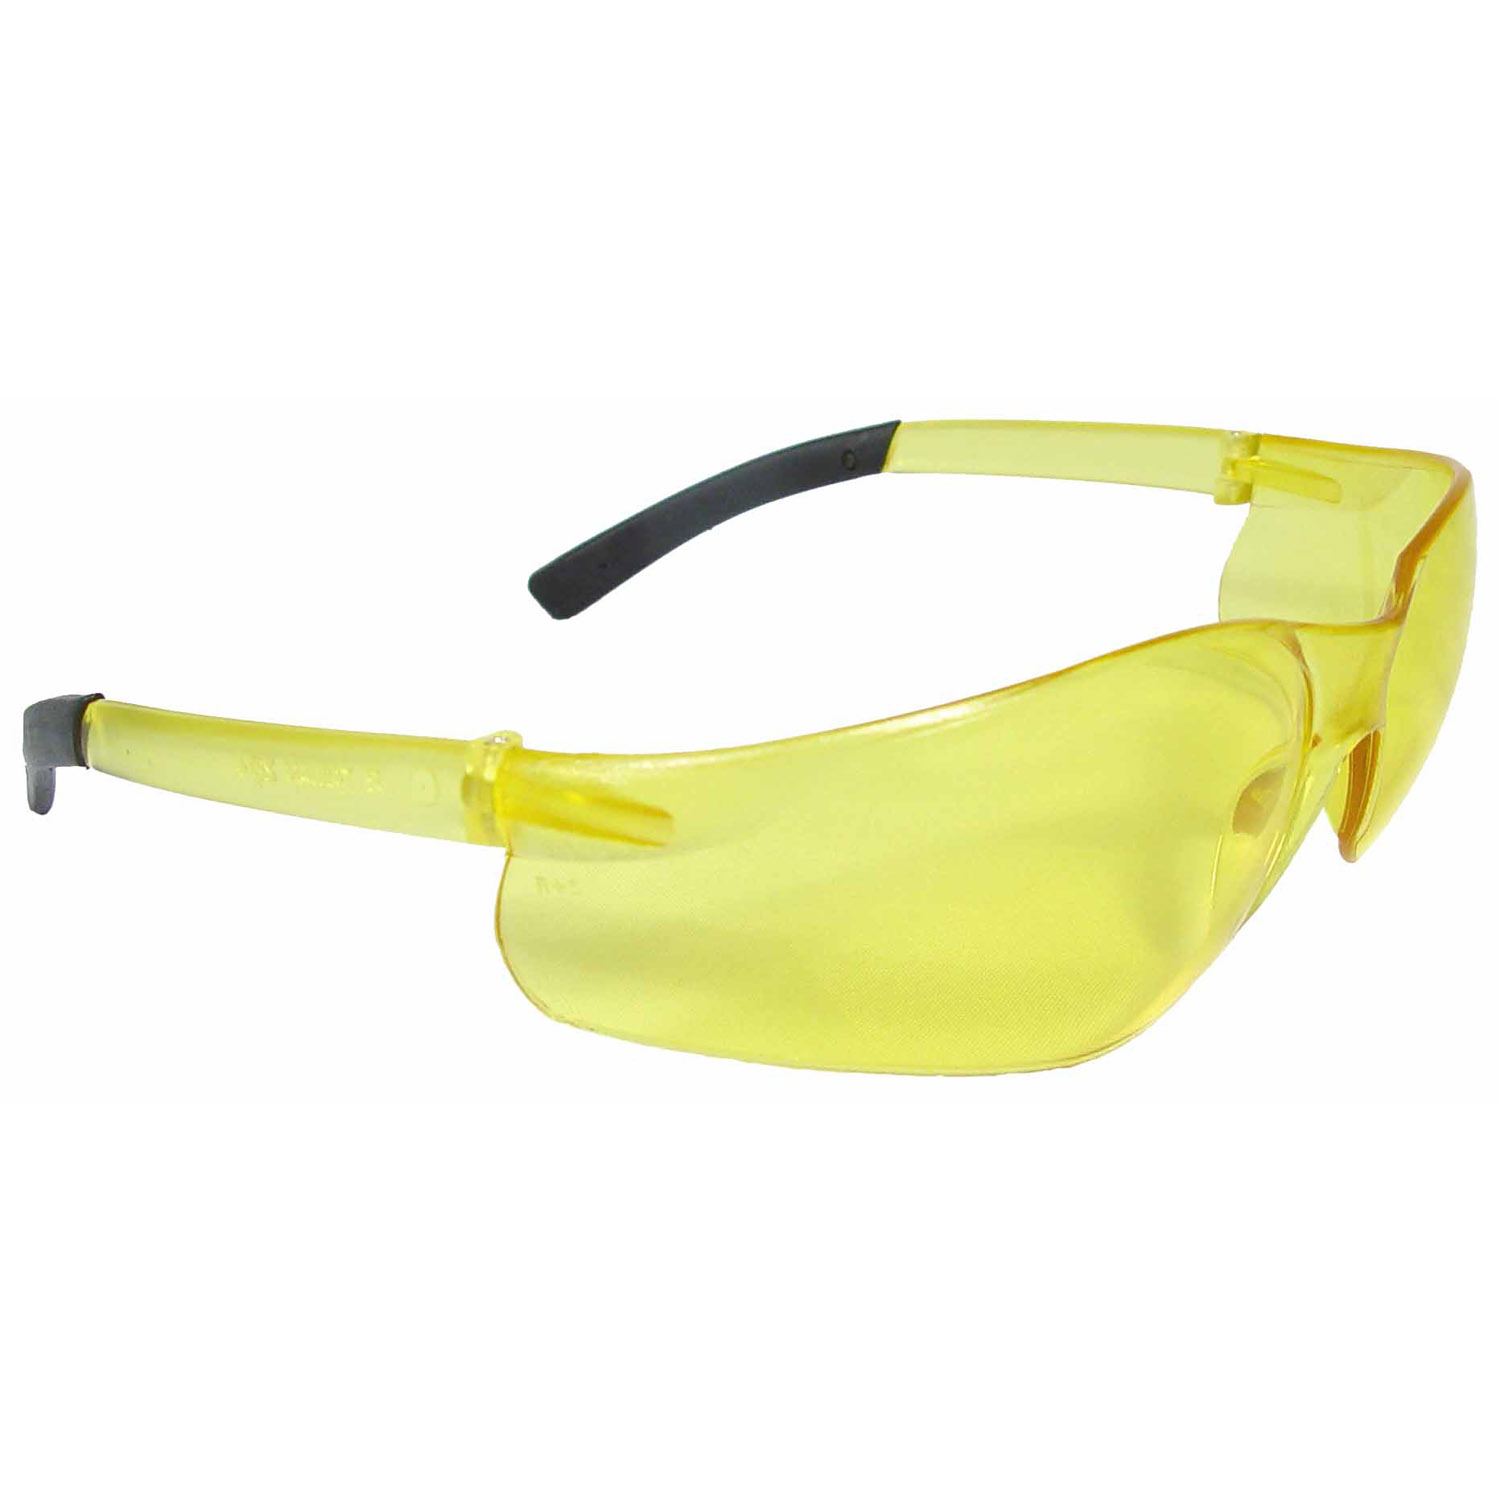 Rad-Atac™ Safety Eyewear - Amber Frame - Amber Lens